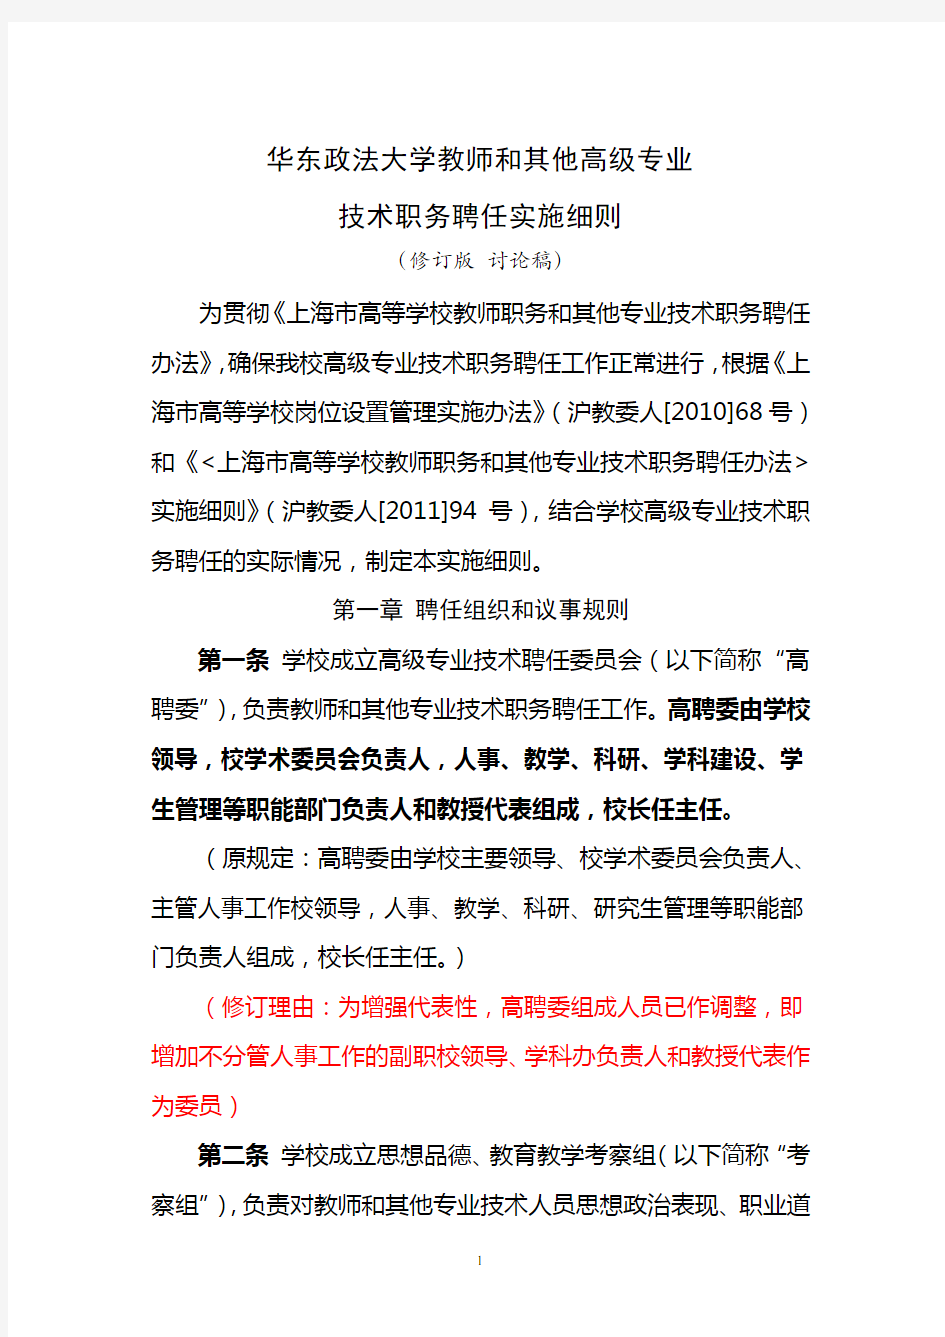 华东政法大学教师和其他高级专业技术职务聘任实施细则修订版